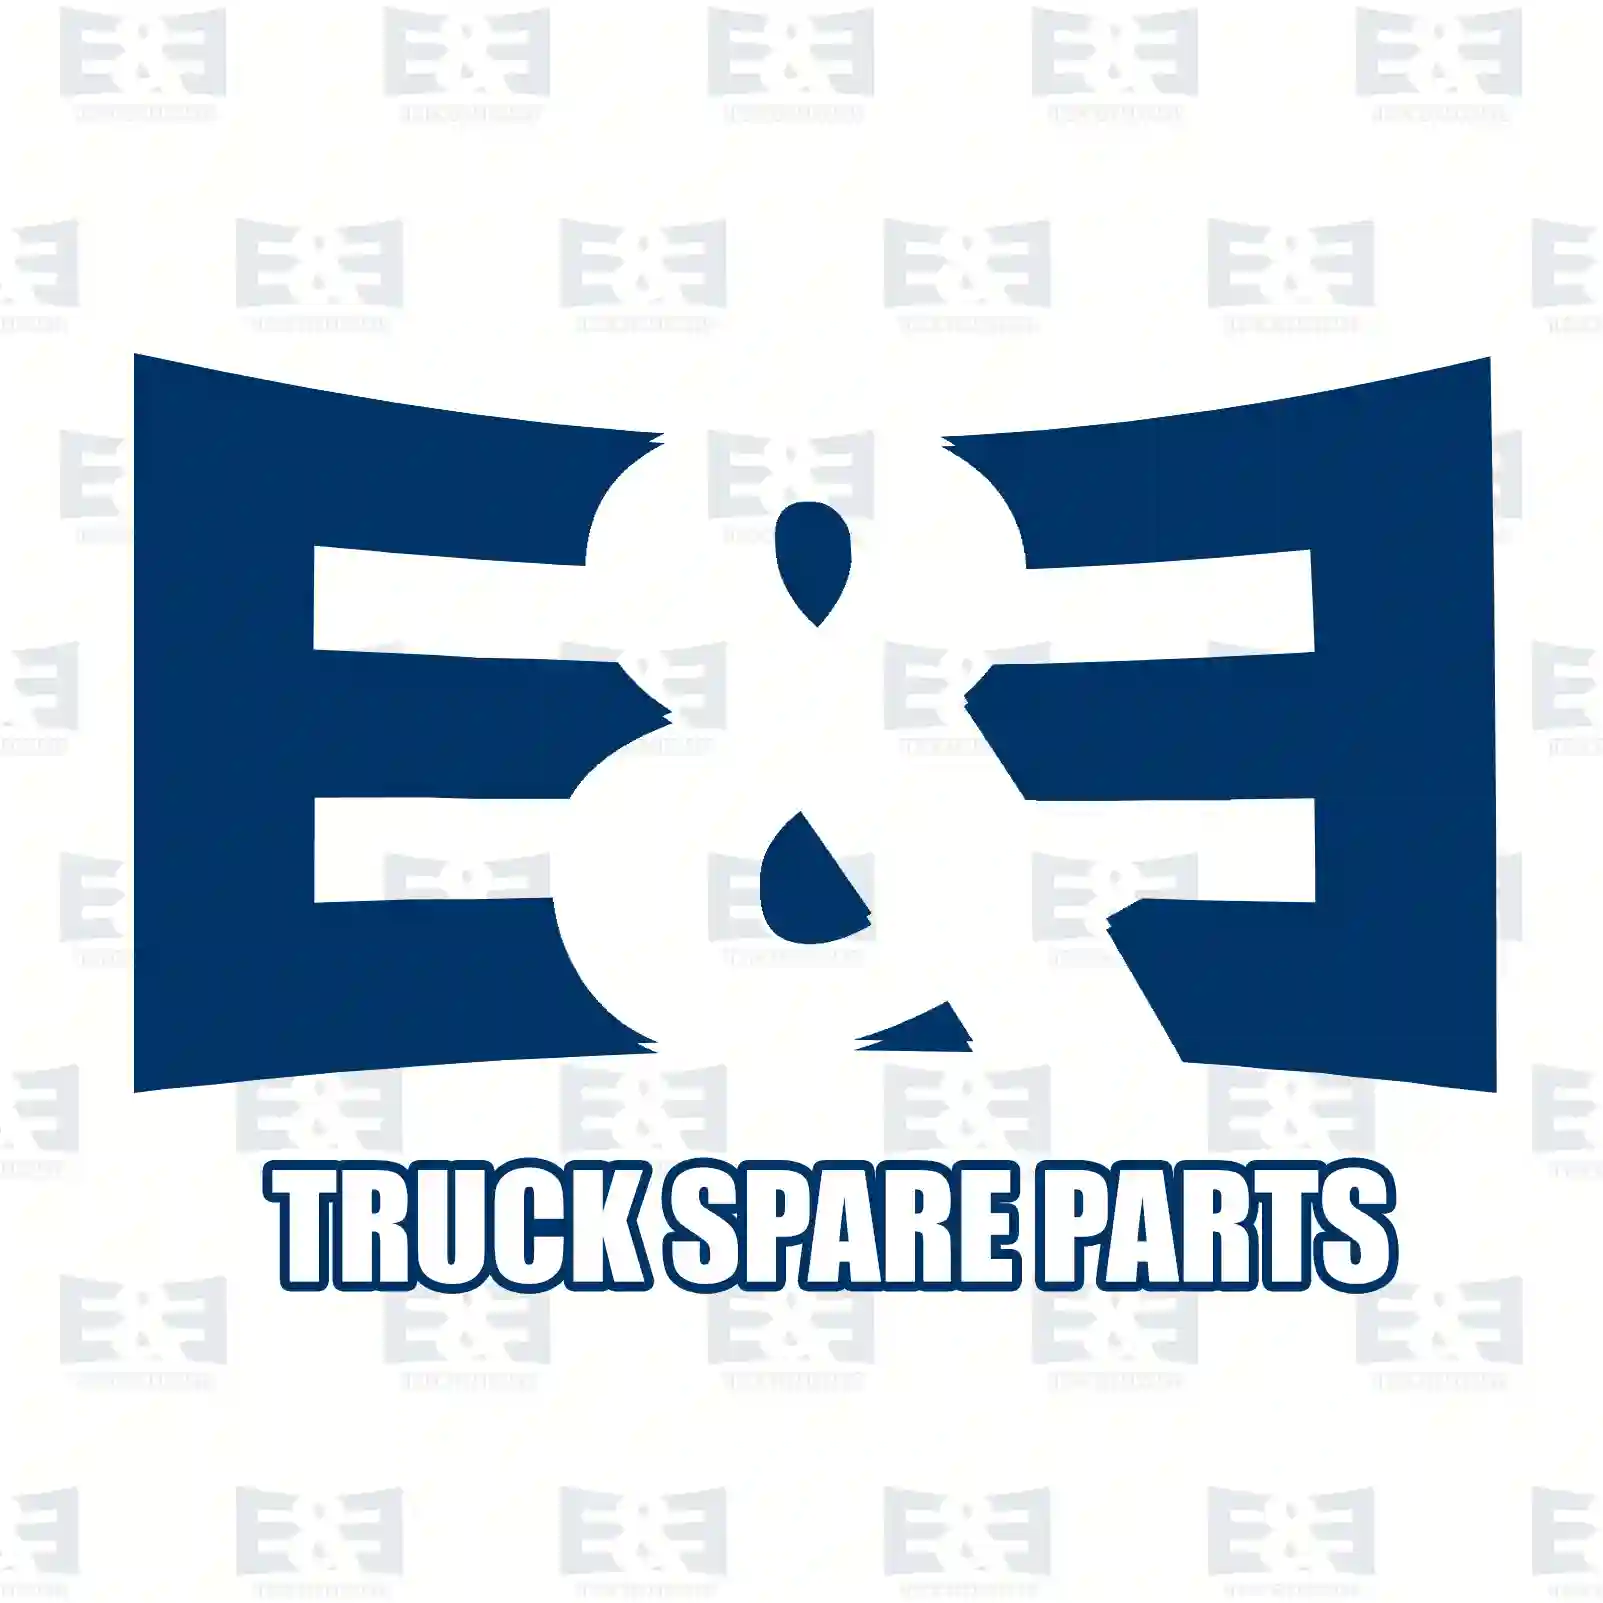 Clutch kit, 2E2288964, 81300056032, 813 ||  2E2288964 E&E Truck Spare Parts | Truck Spare Parts, Auotomotive Spare Parts Clutch kit, 2E2288964, 81300056032, 813 ||  2E2288964 E&E Truck Spare Parts | Truck Spare Parts, Auotomotive Spare Parts